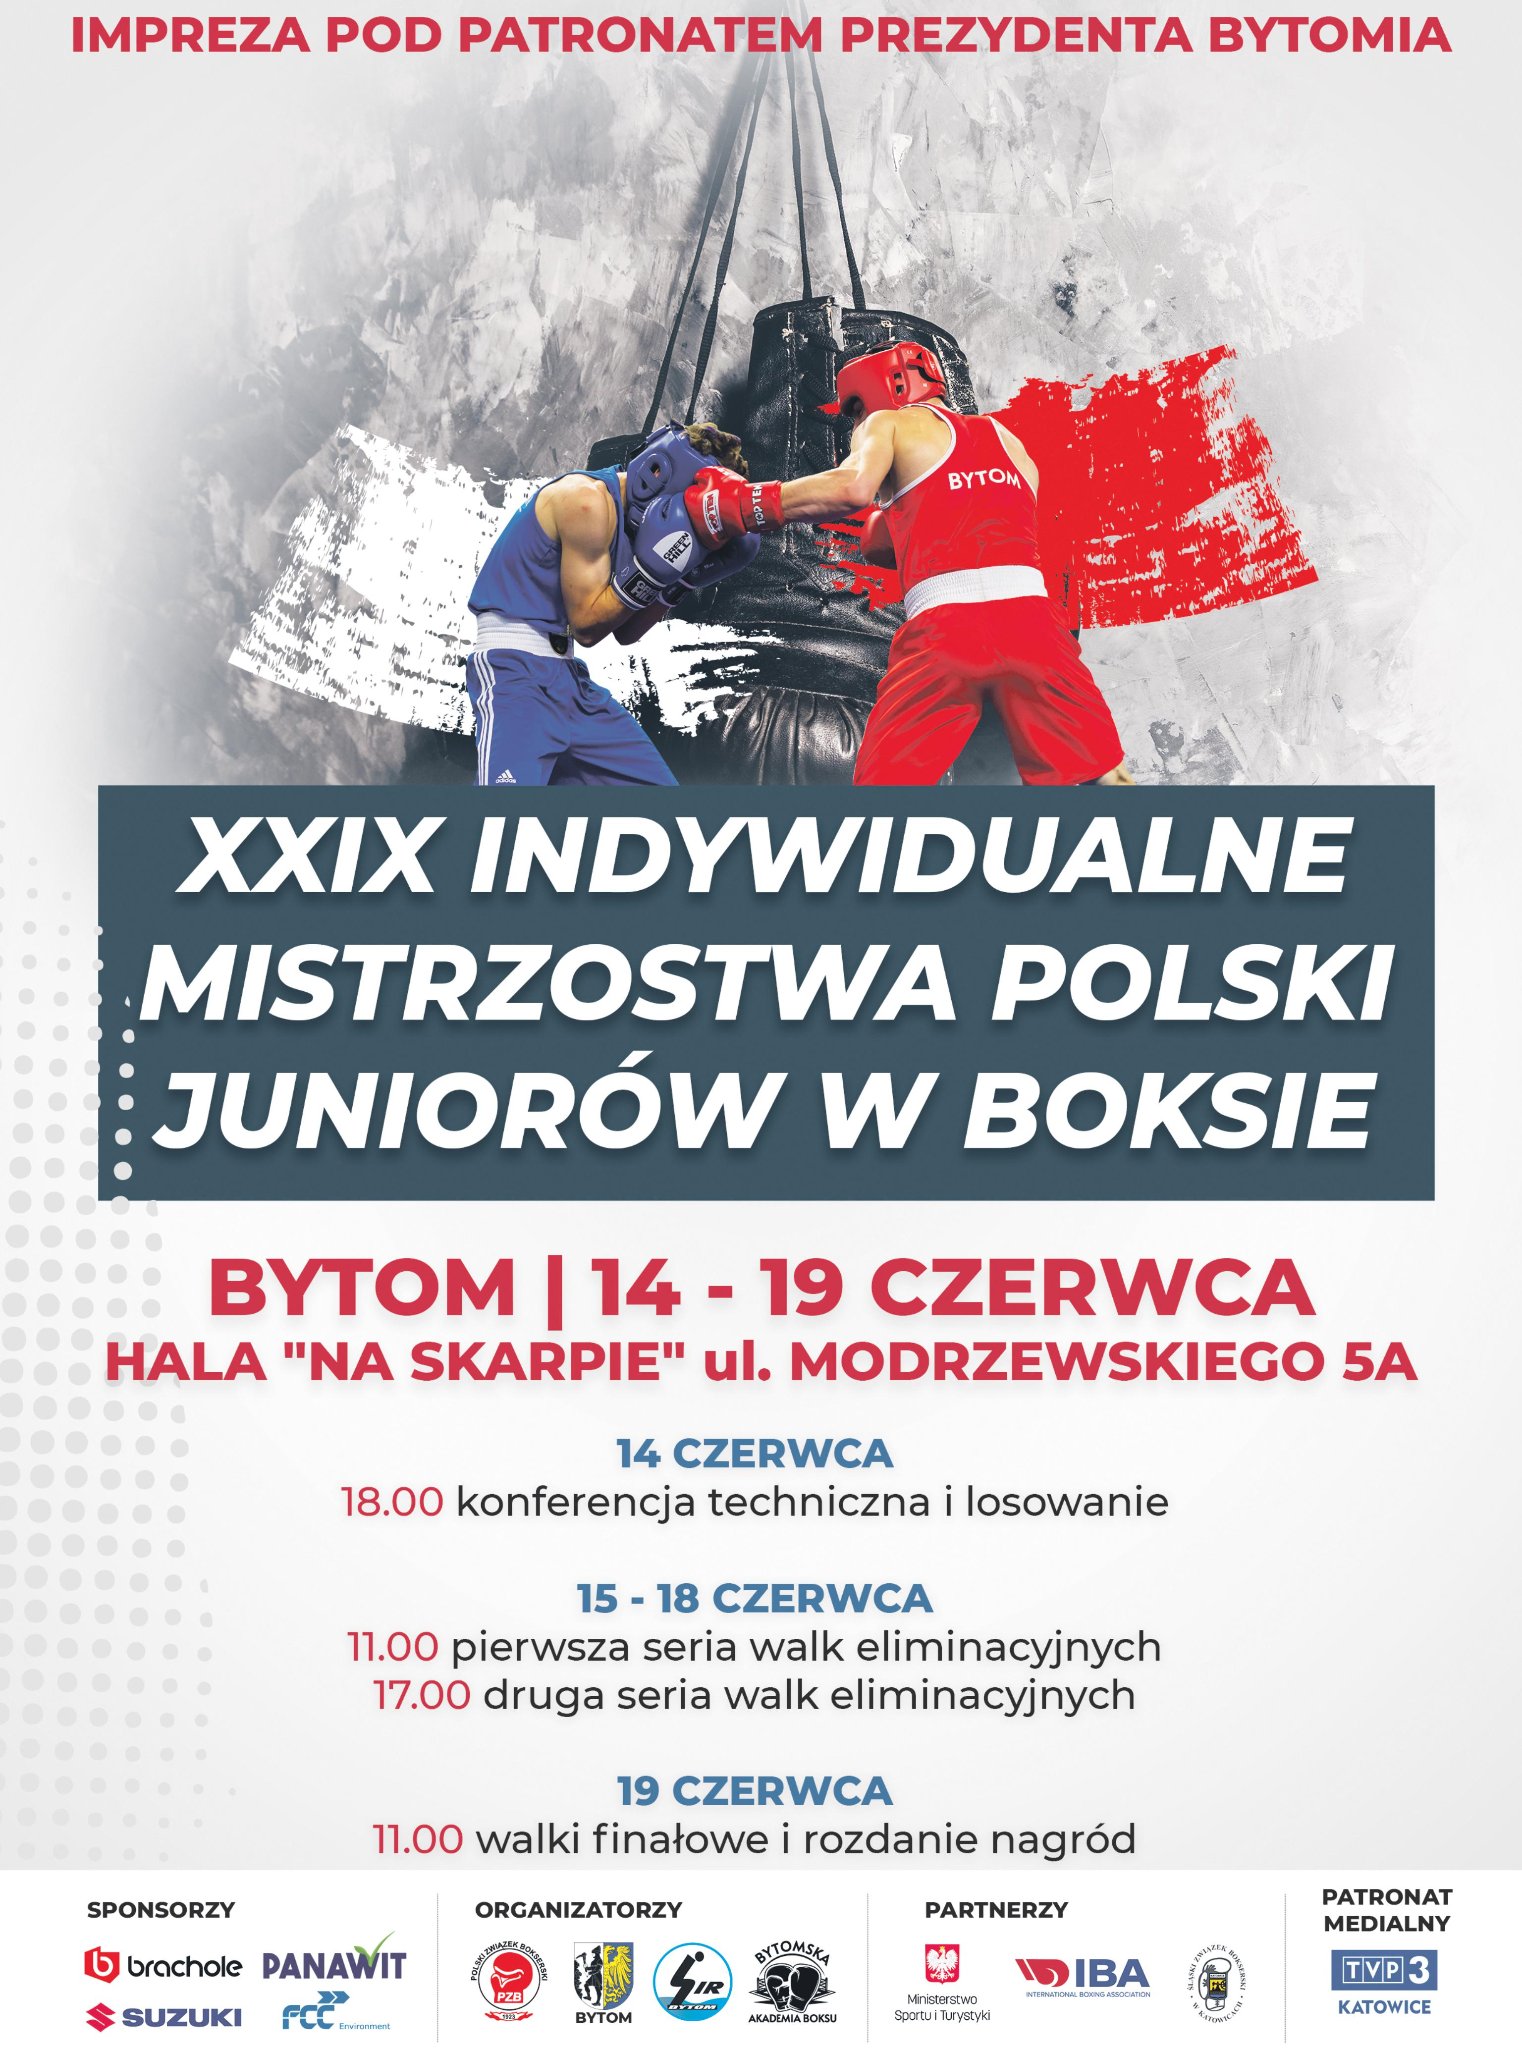 Bytom – XXIX Indywidualne Mistrzostwa Polski Juniorów w Boksie